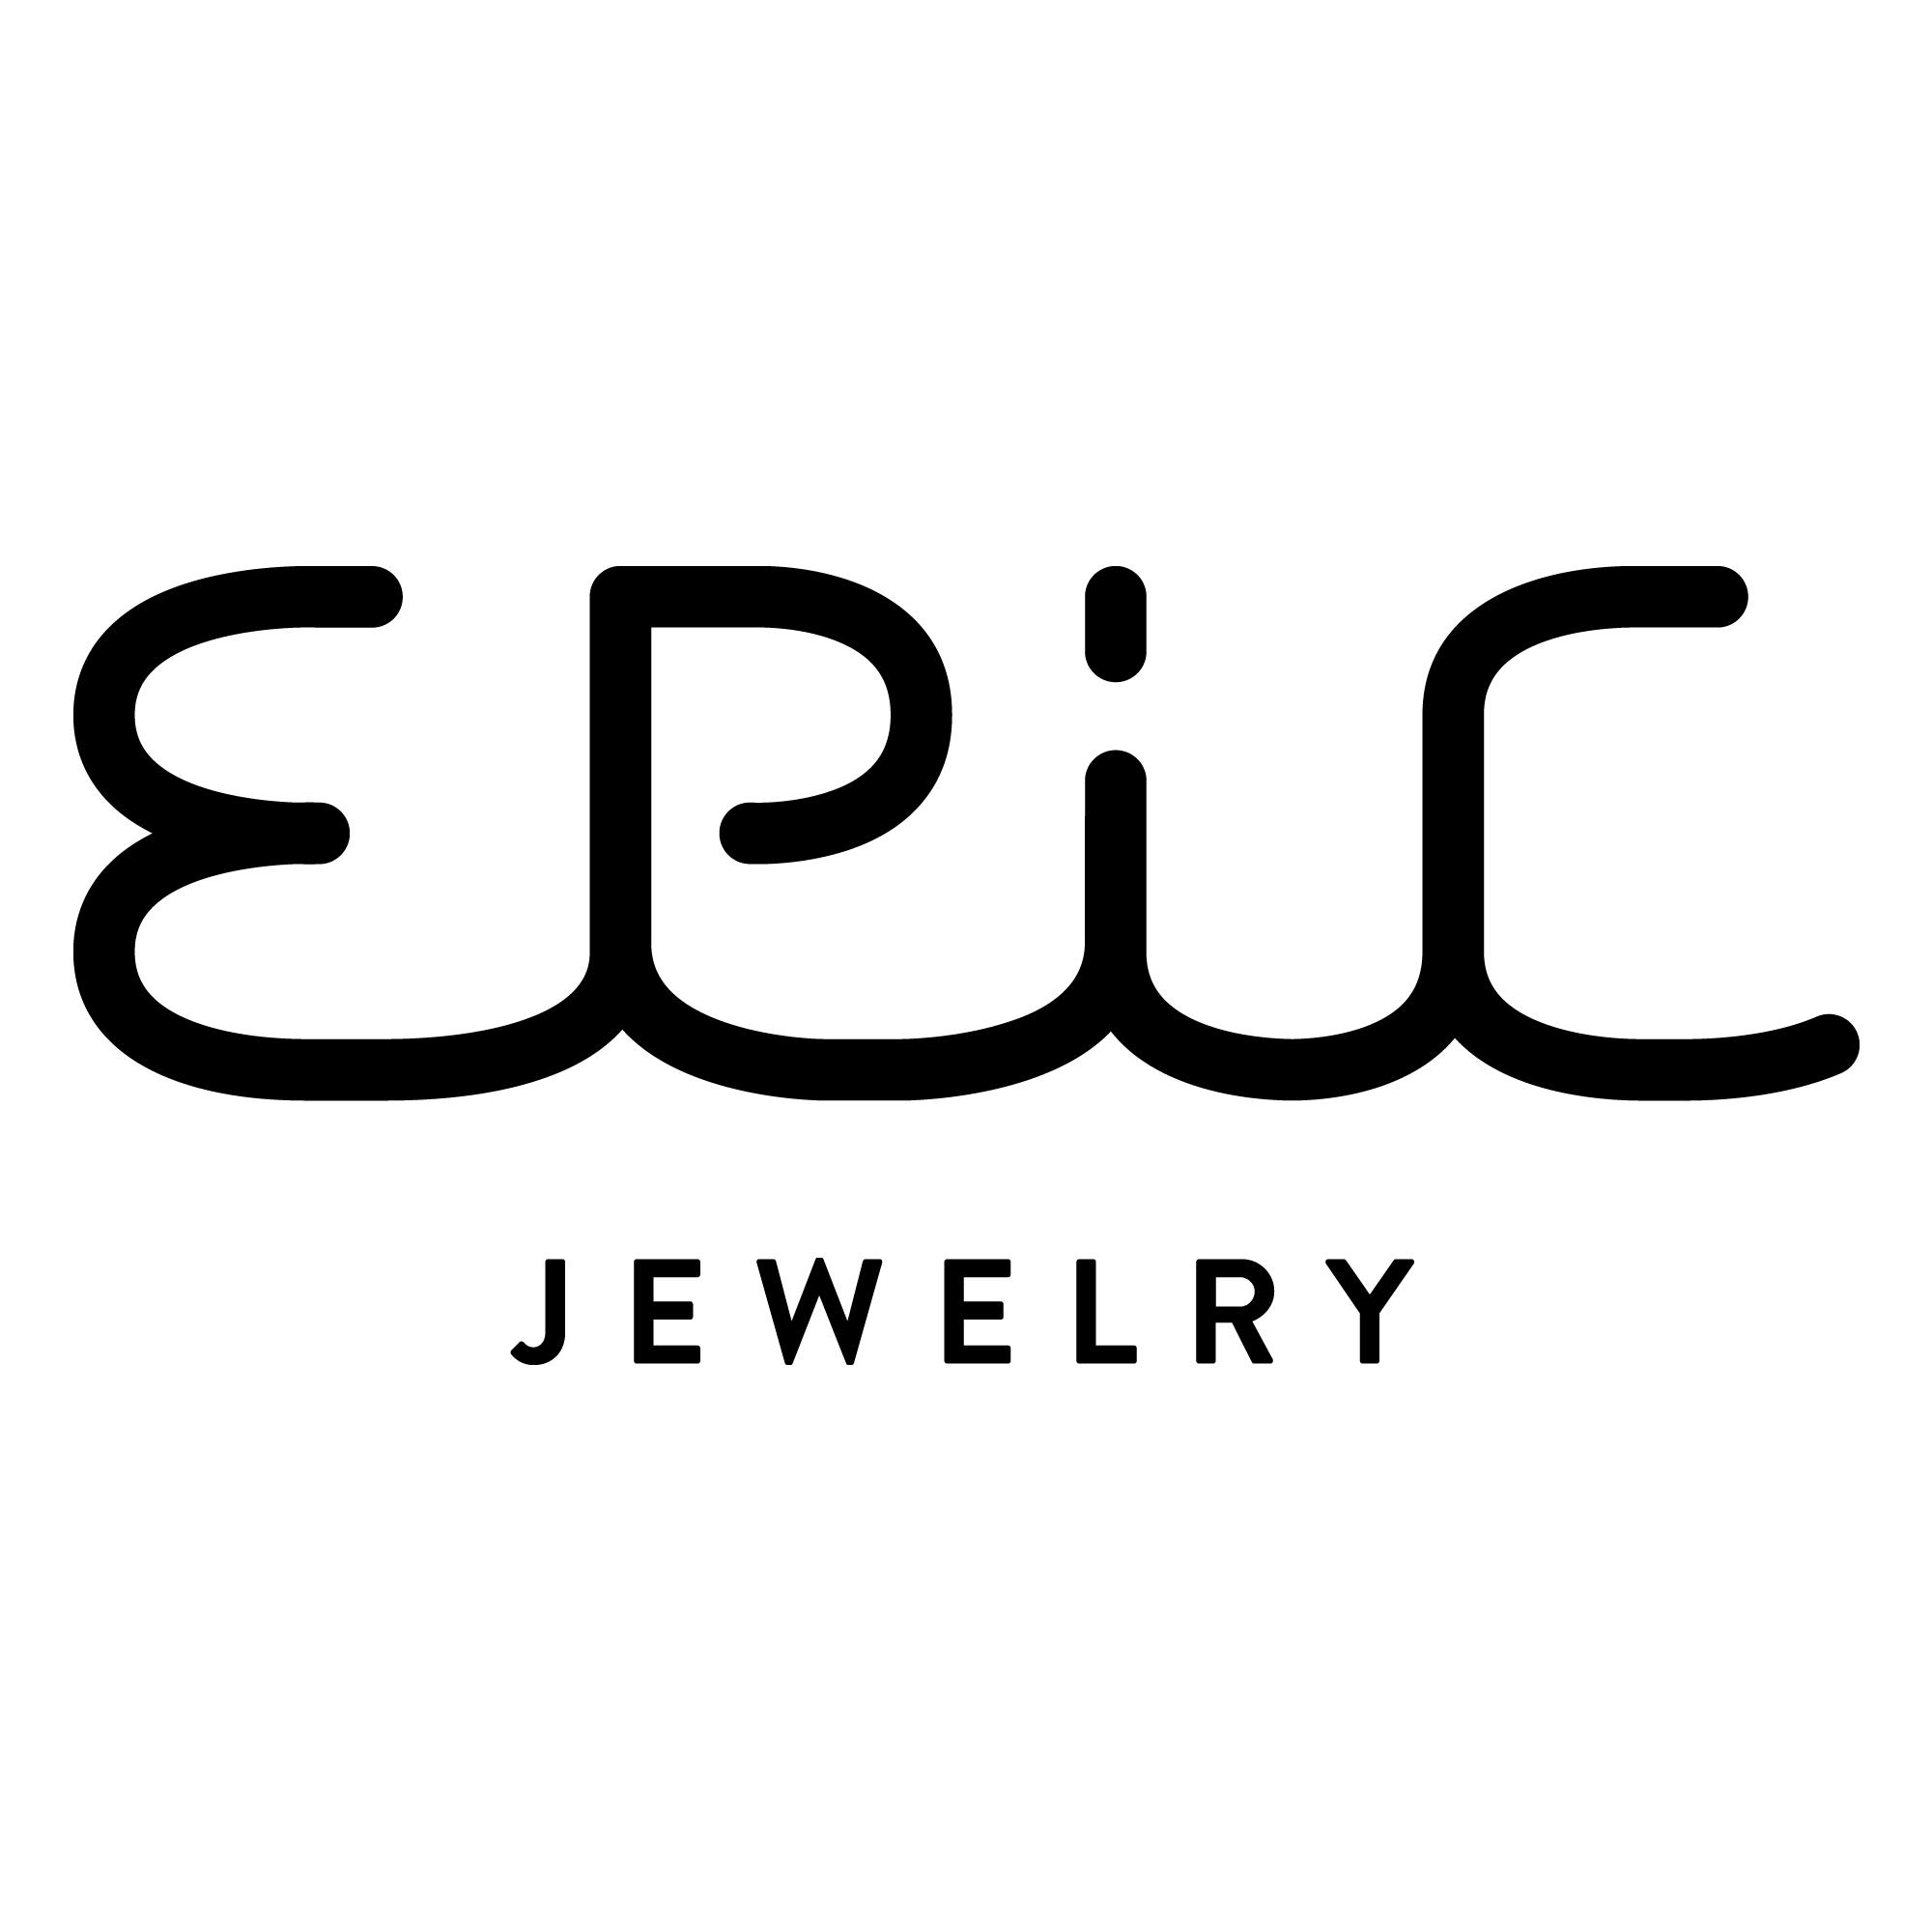 EPiC Jewelry